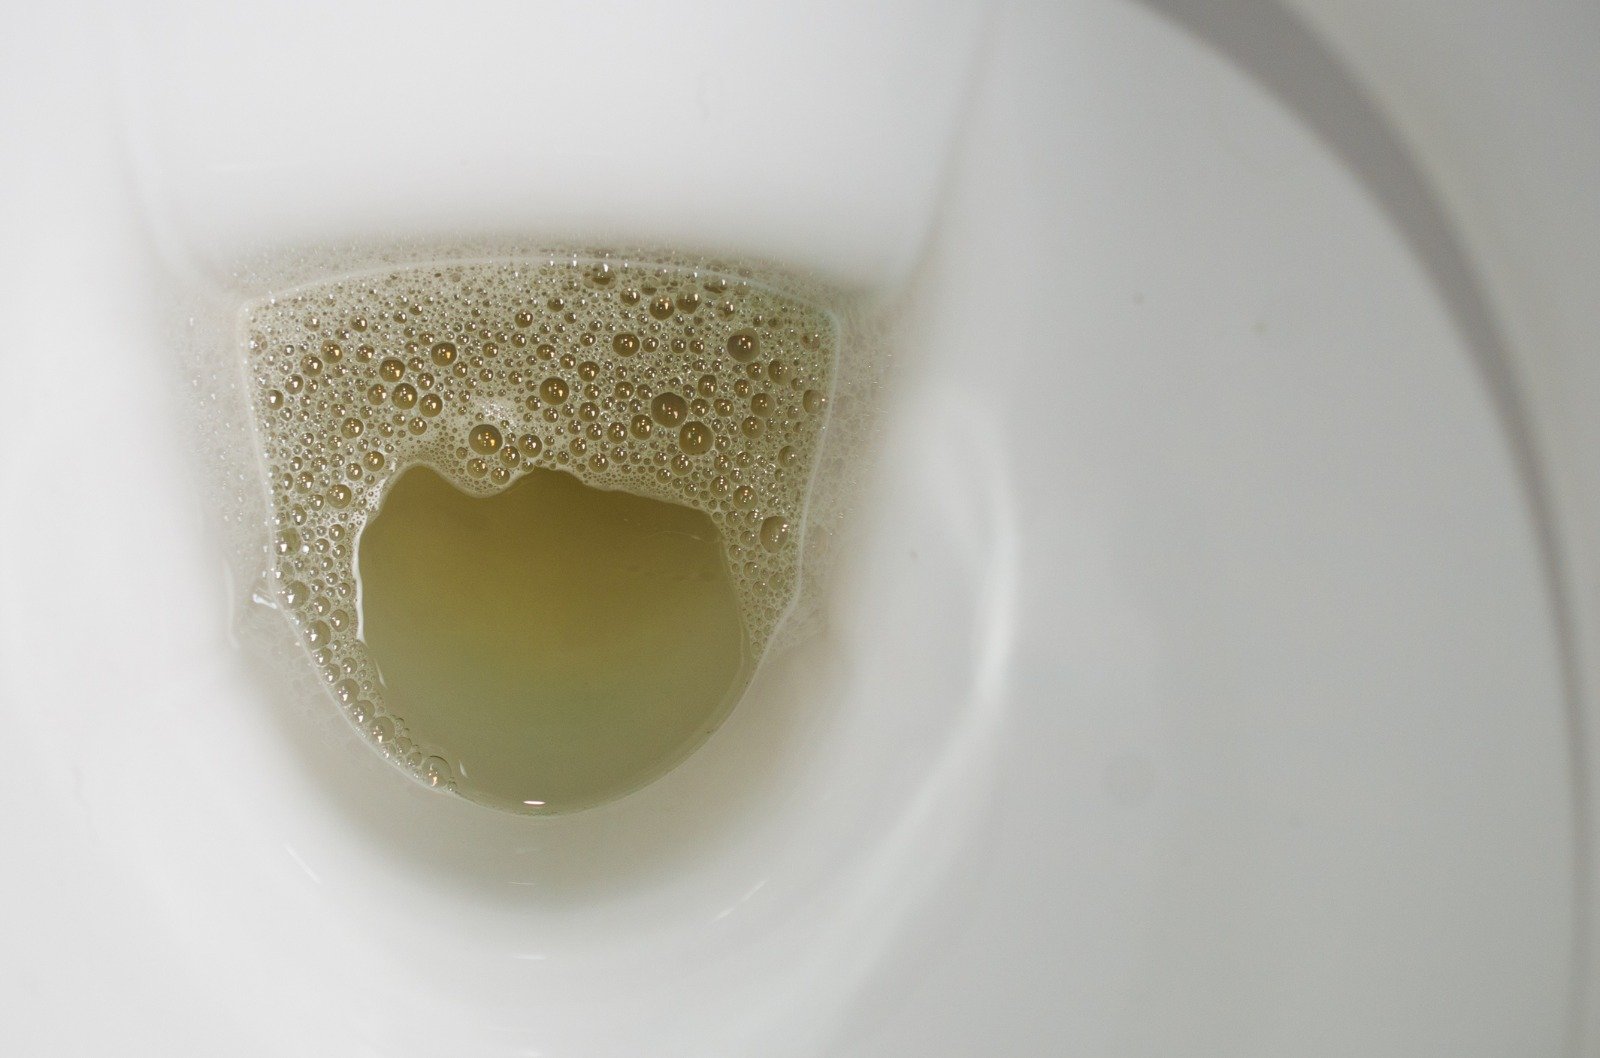 Foam in urine